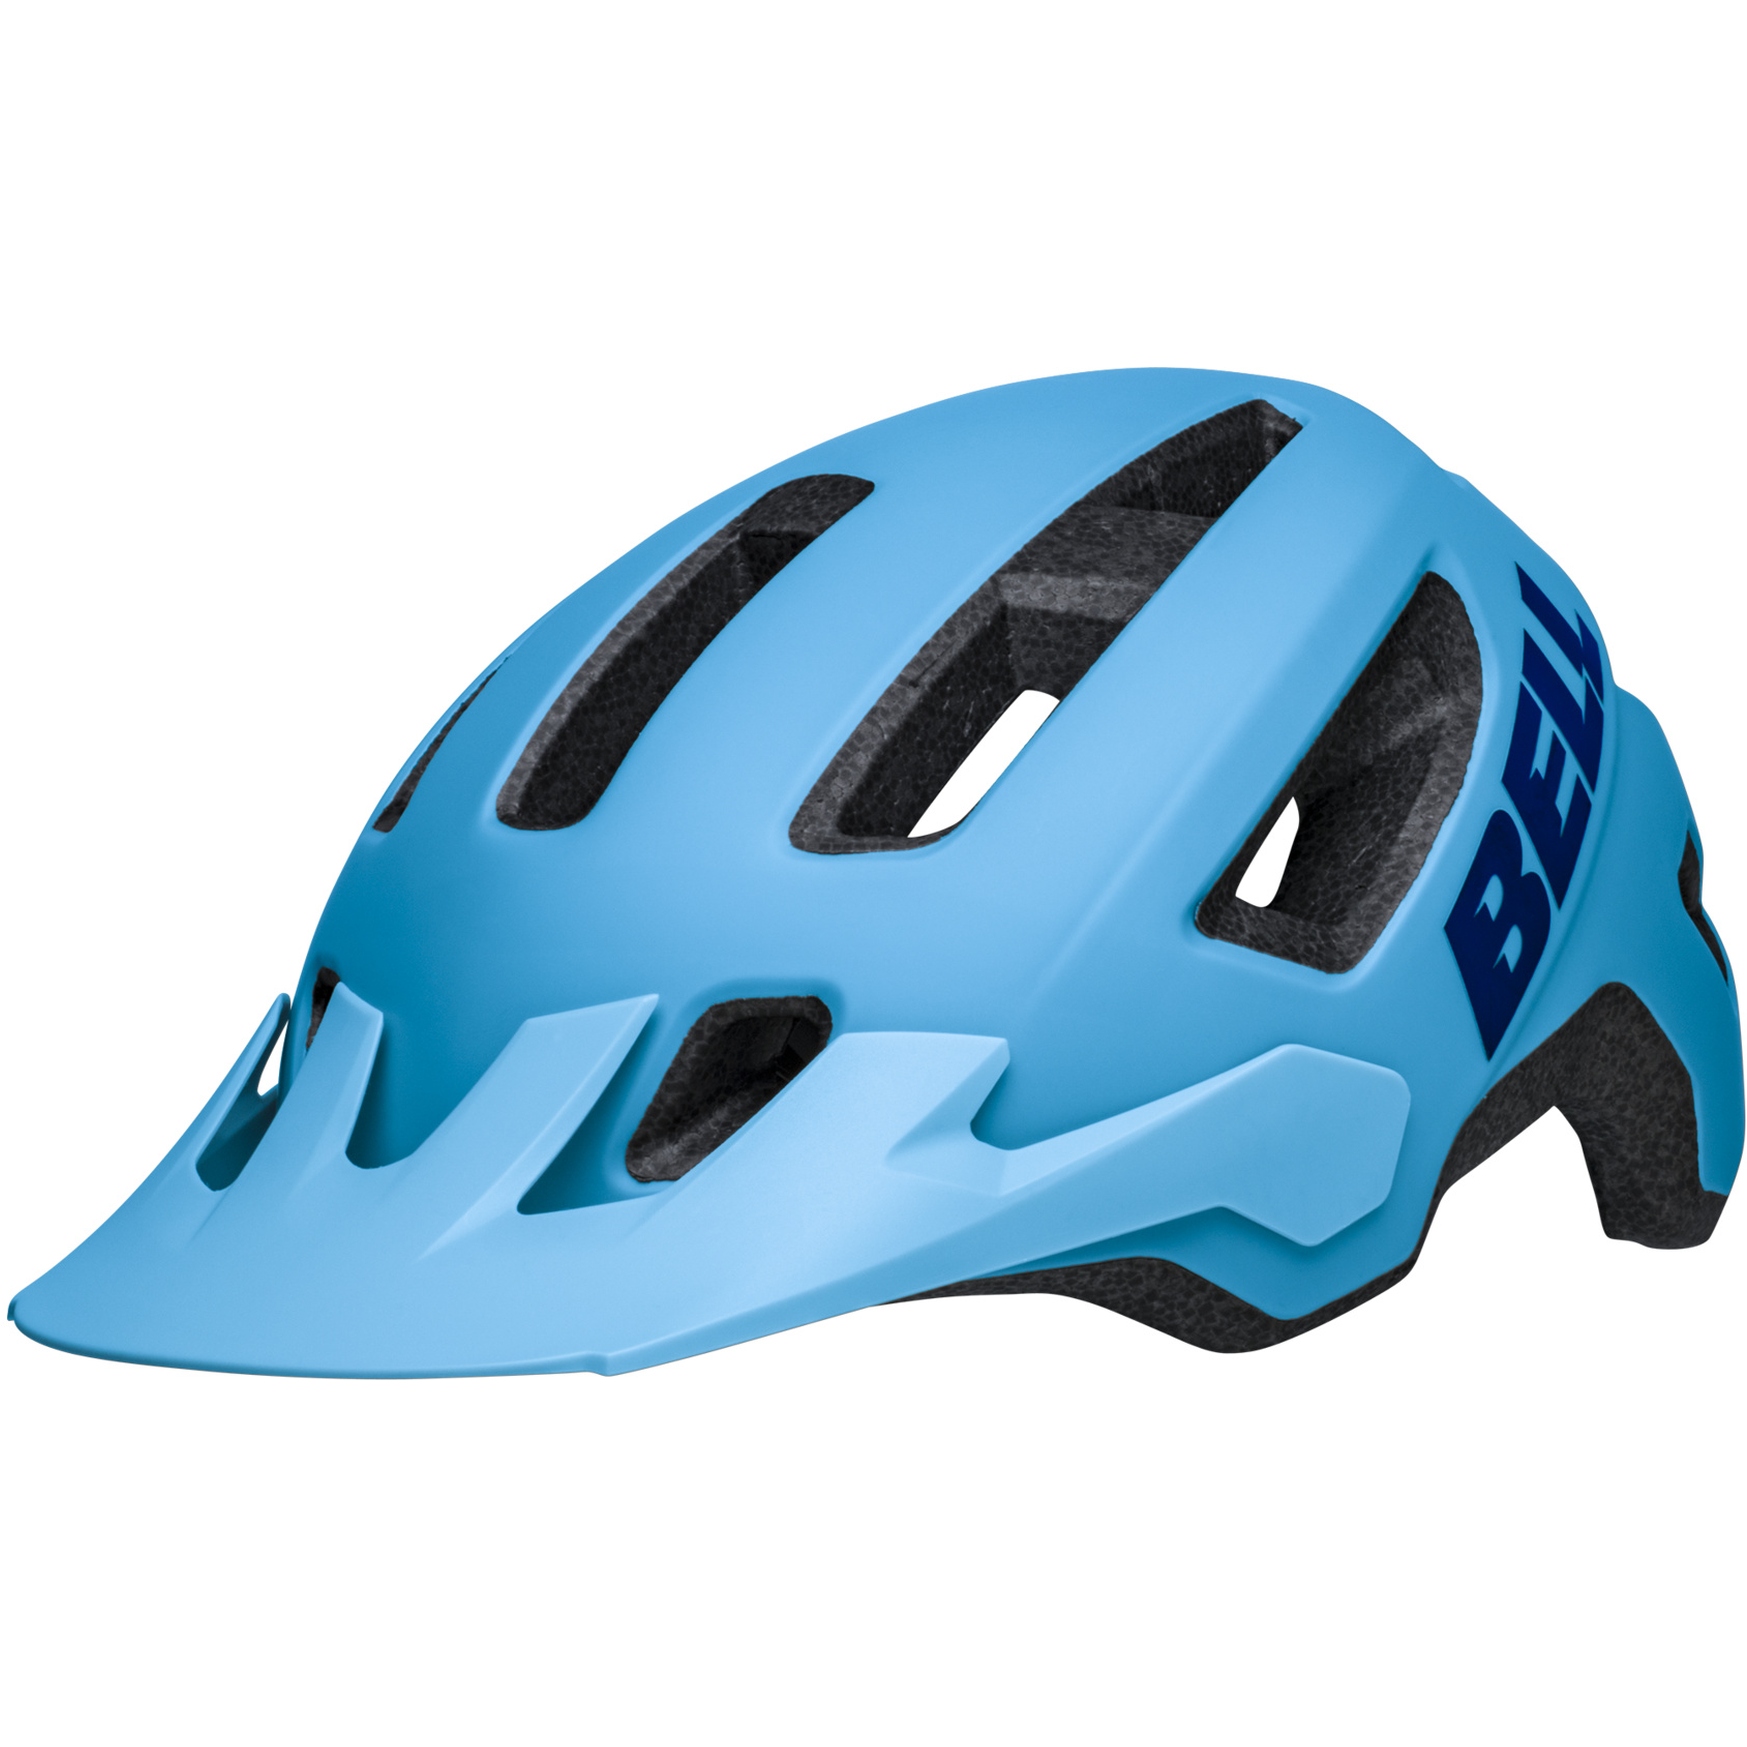 Image of Bell Nomad 2 JR Mips Youth Helmet - matte blue